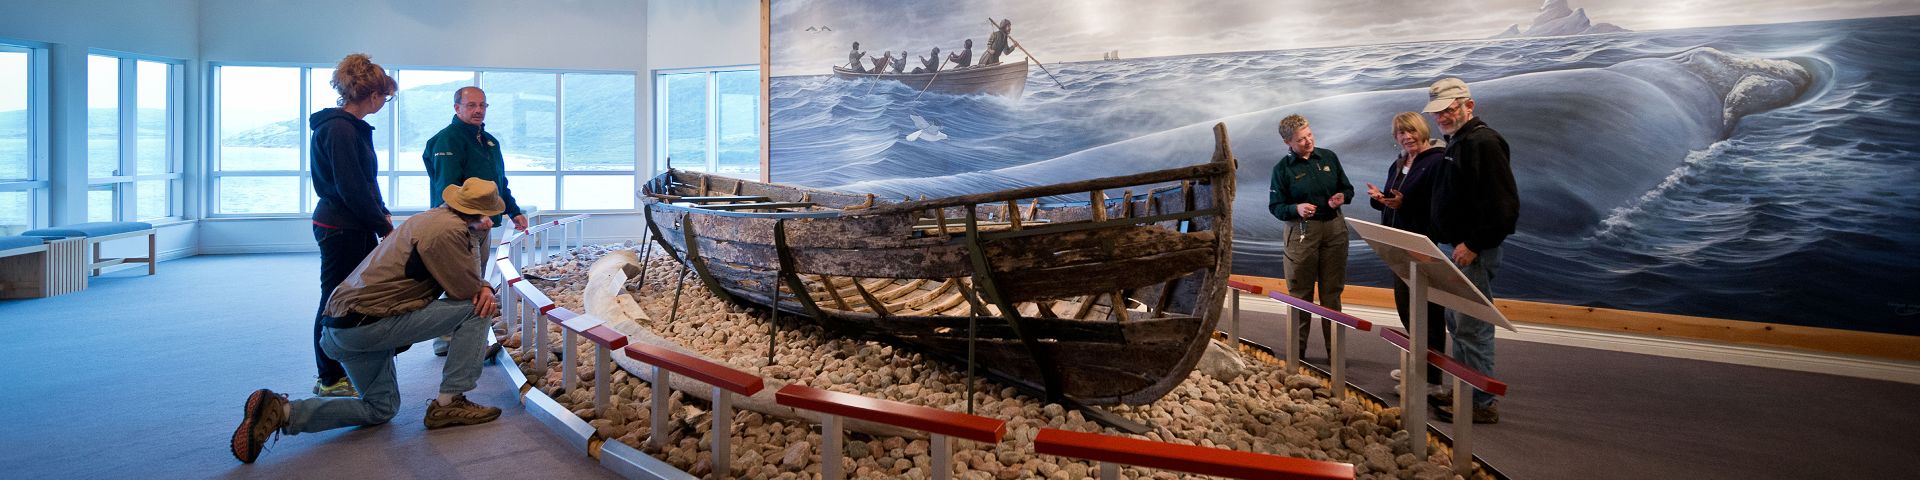 Des employés de Parcs Canada parlent à un groupe de visiteurs près d'une exposition d'un bateau basque au lieu historique national de Red Bay